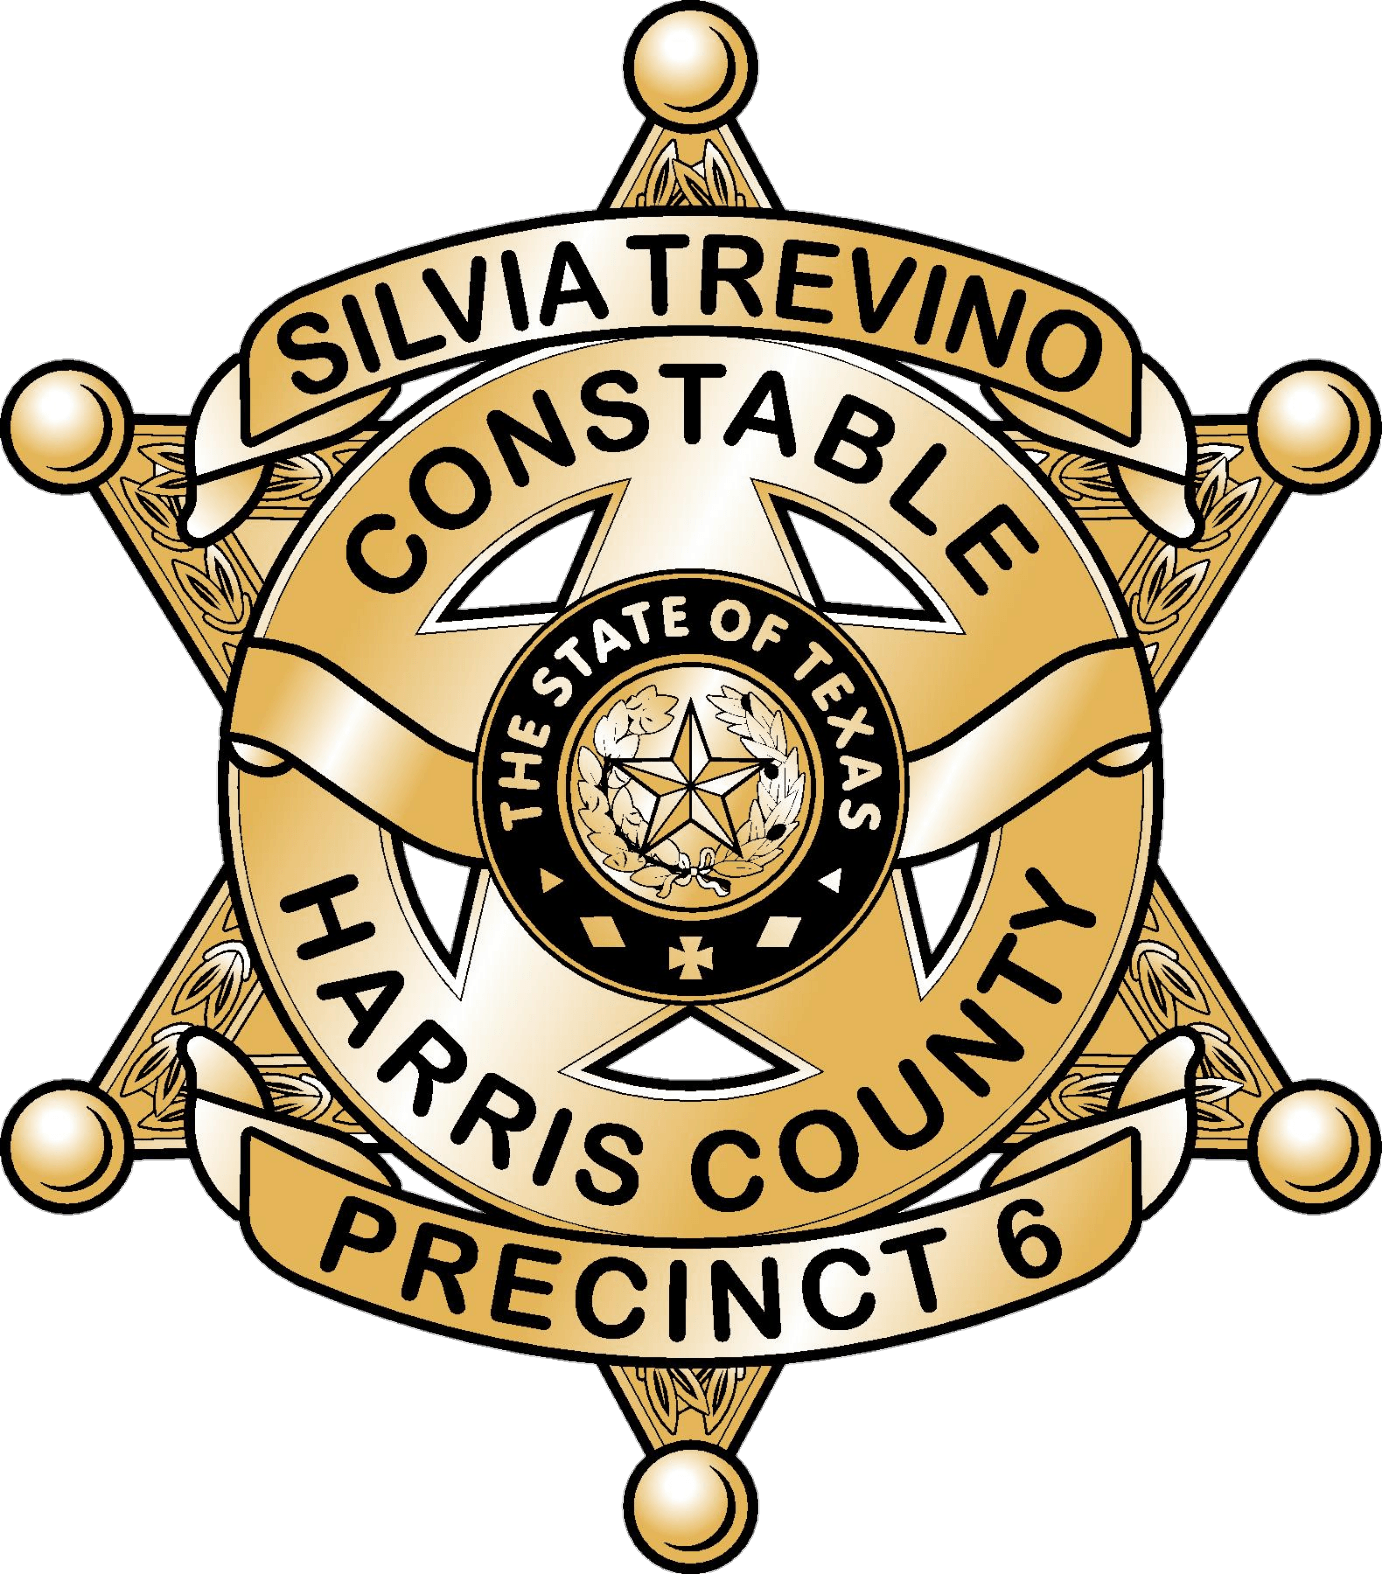 Gallery Harris County Precinct 6